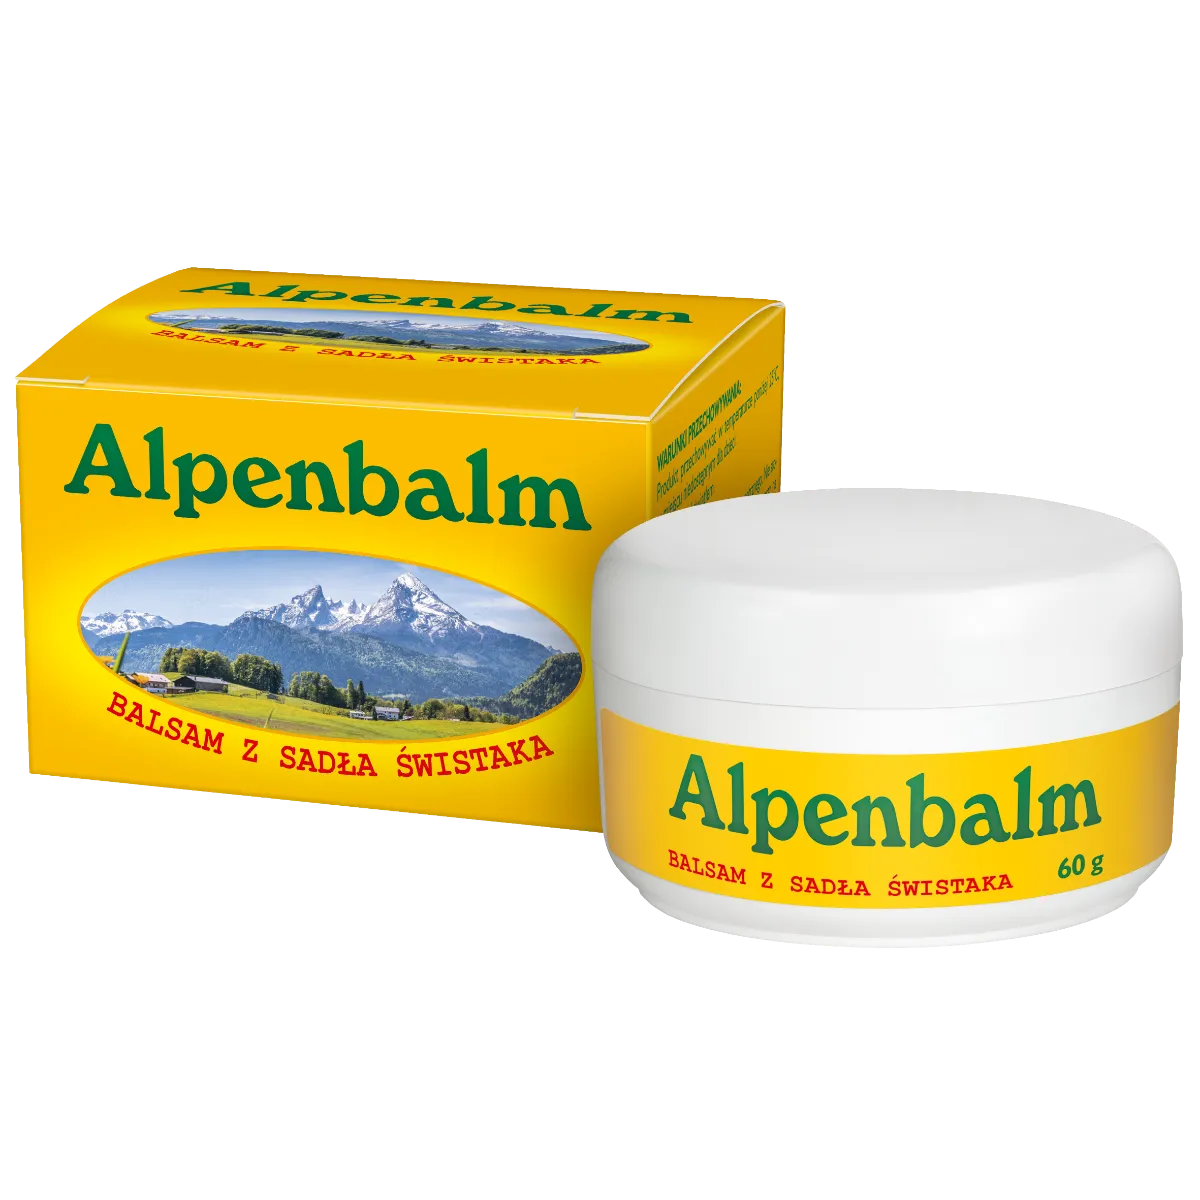 Alpenbalm Balsam z sadła świstaka, 60 g 